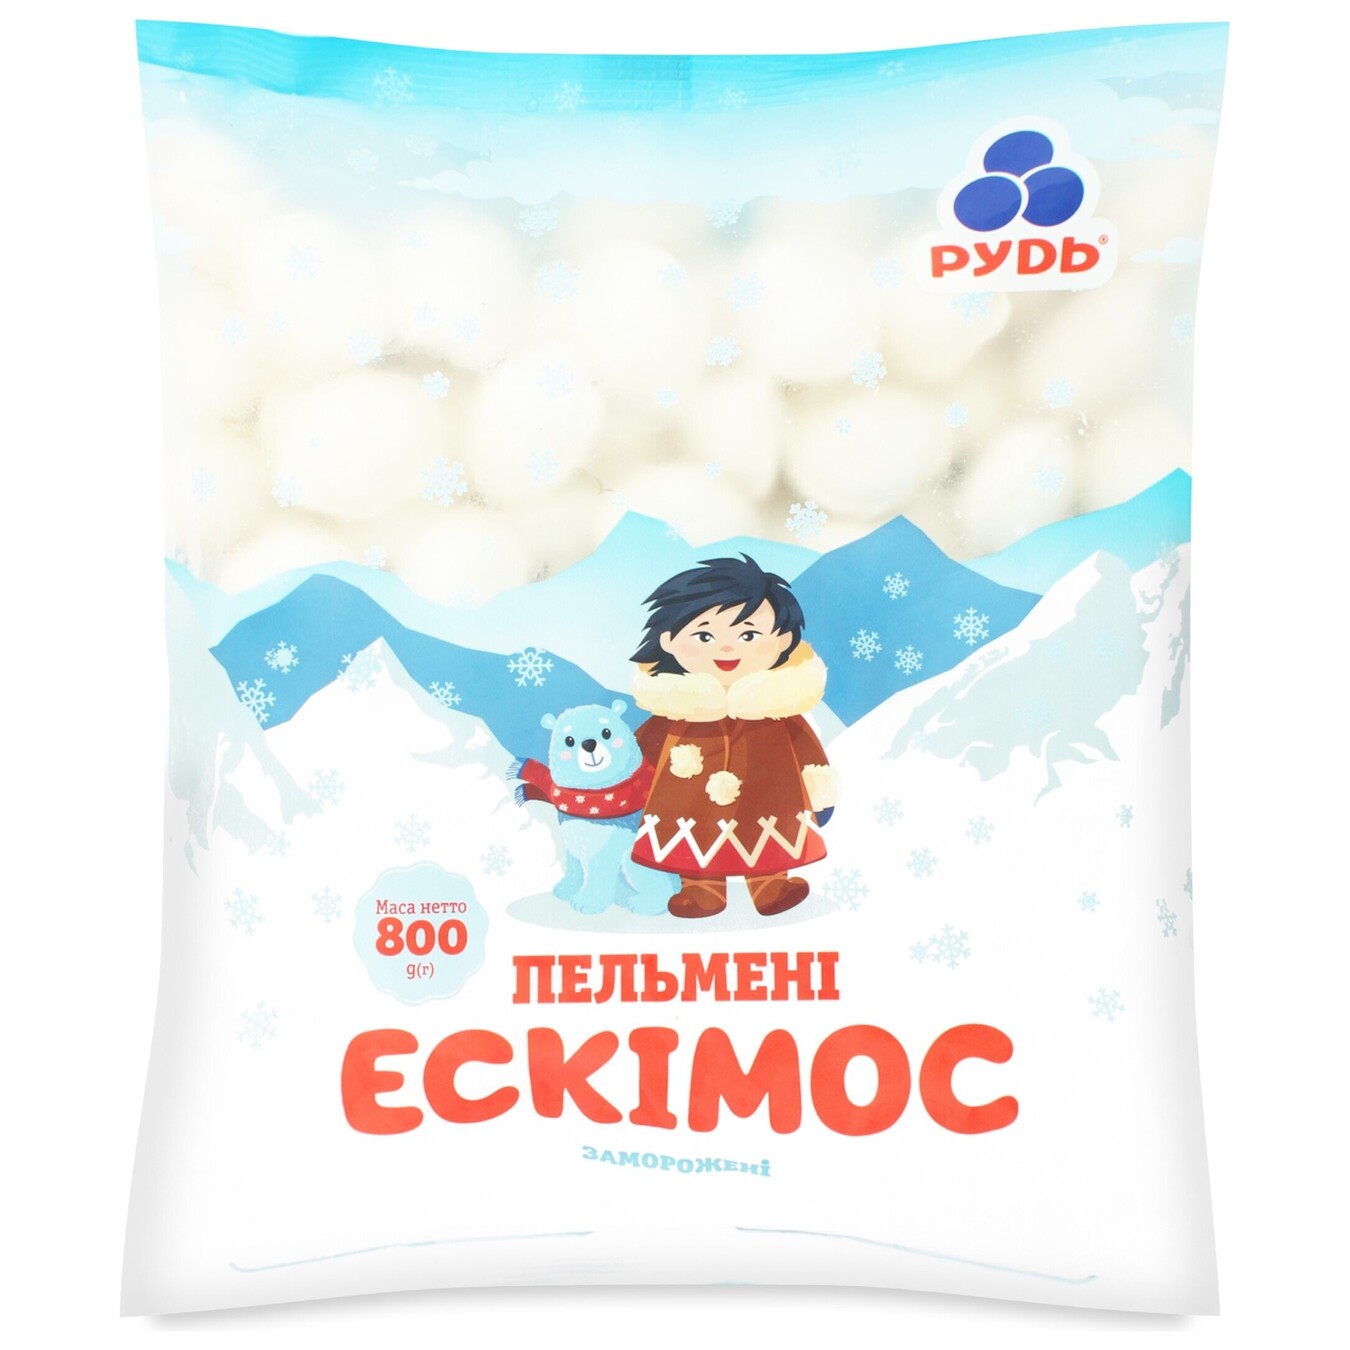 Rud Eskimo Frozen Dumplings 800g